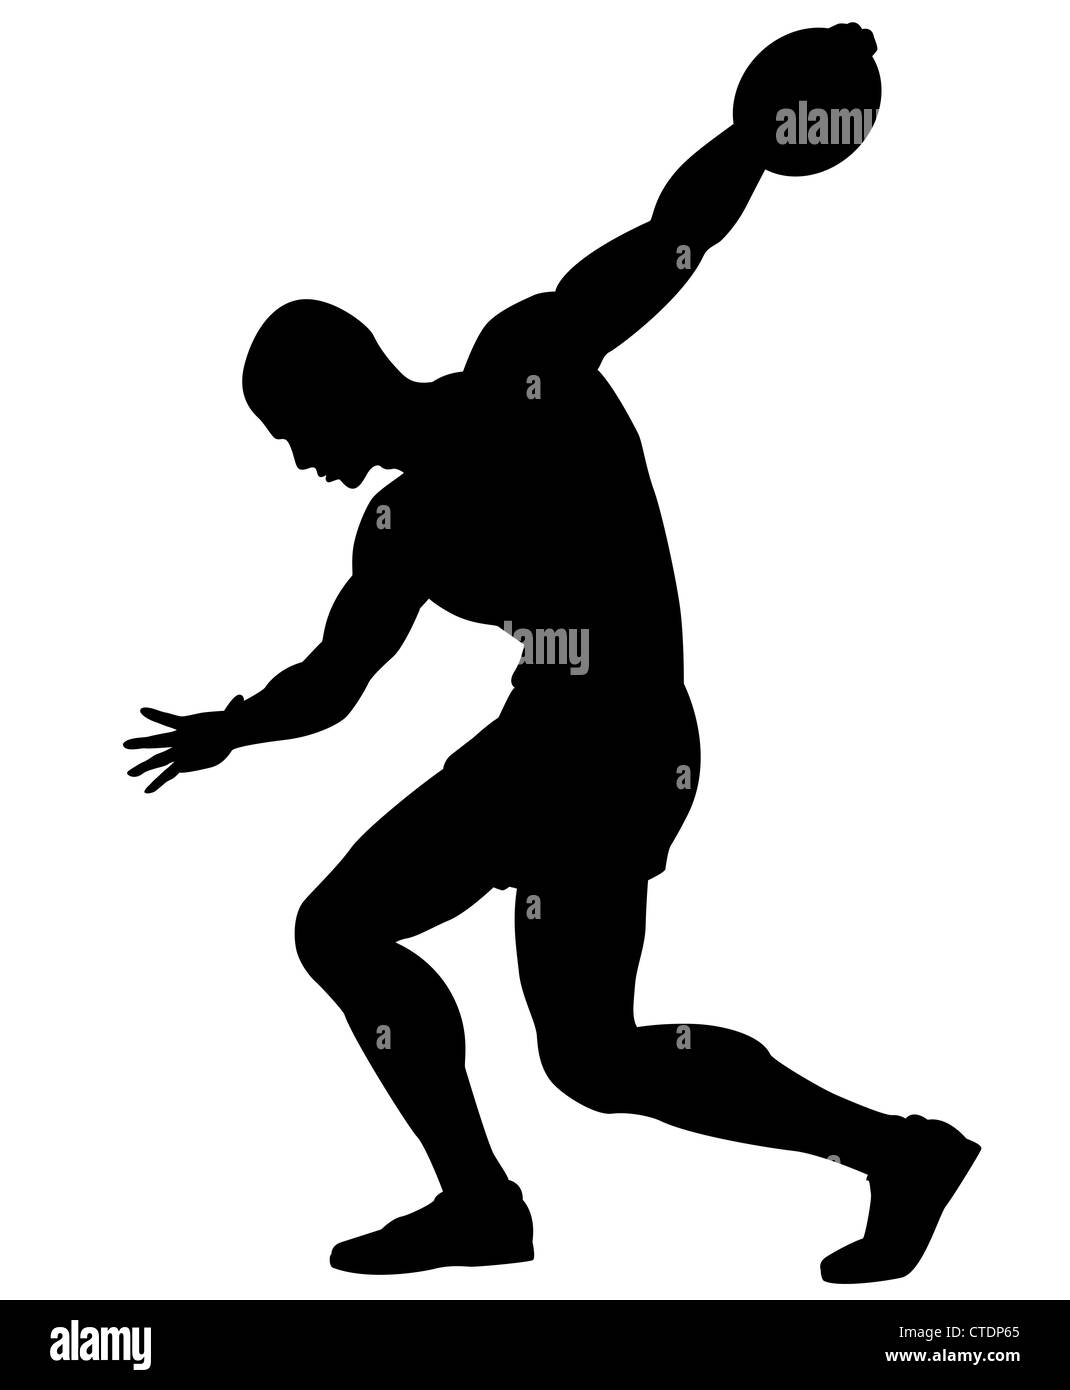 Illustrierte Silhouette eines Mannes zu einem Diskus werfen Sie Stockfoto